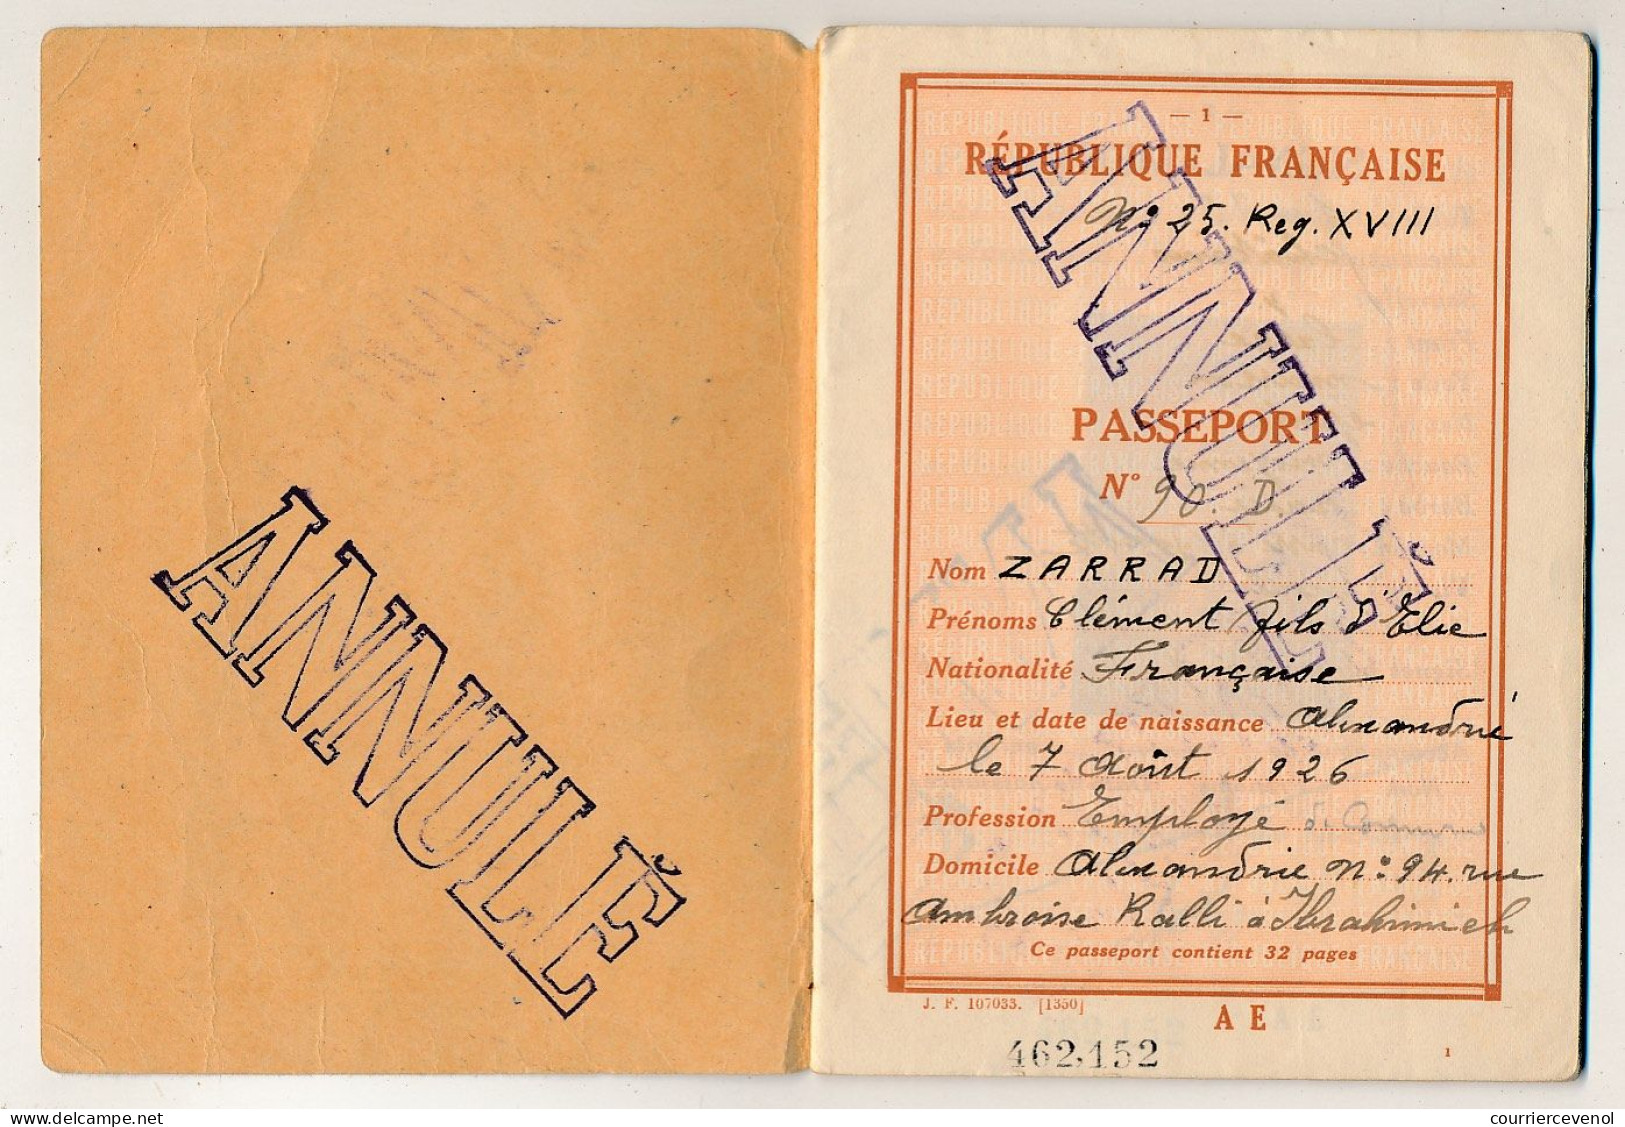 FRANCE - Passeport Délivré Par Le Consulat D'ALEXANDRIE (Egypte) - 1952/1956 - Fiscaux Type Daussy / Affaires étrangères - Storia Postale